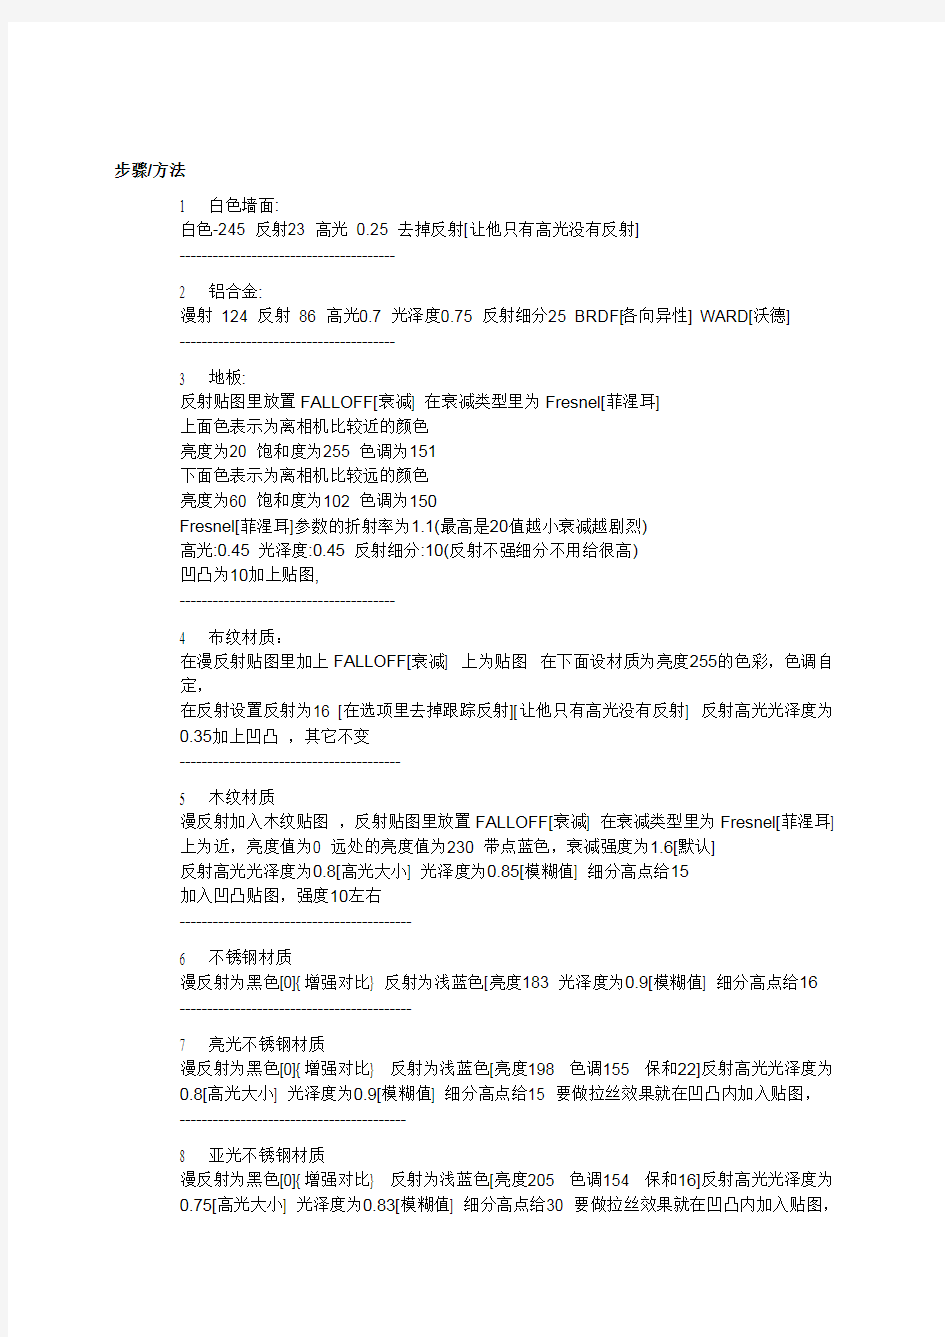 (完整版)中文_vray材质参数大全,推荐文档